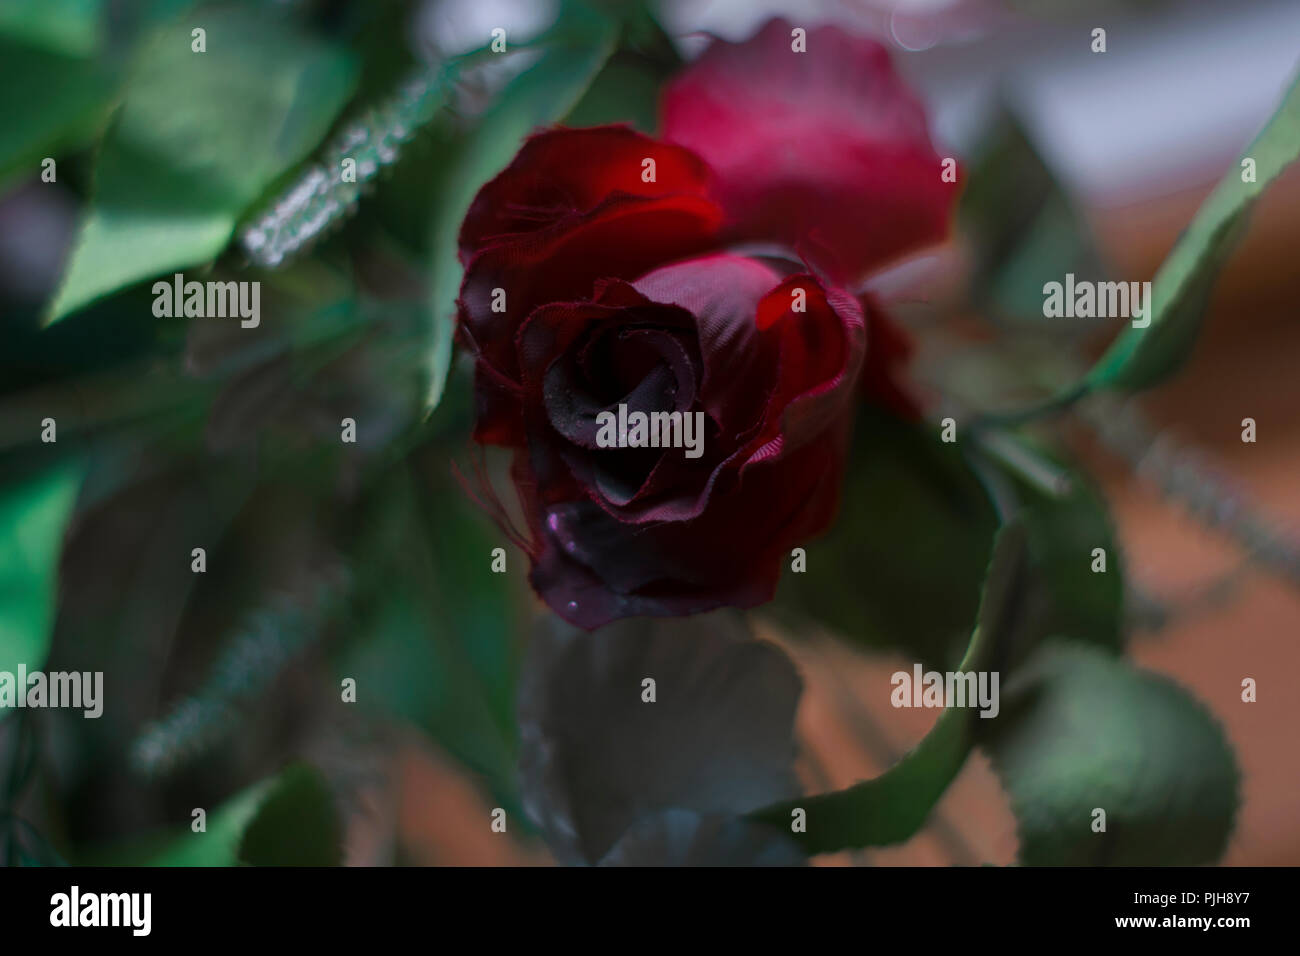 Kreative Kunst Fotografien einer roten Rose Blume mit einem verschwommenen braunen Hintergrund, Foto in uyo Akwa Ibom state genommen Stockfoto